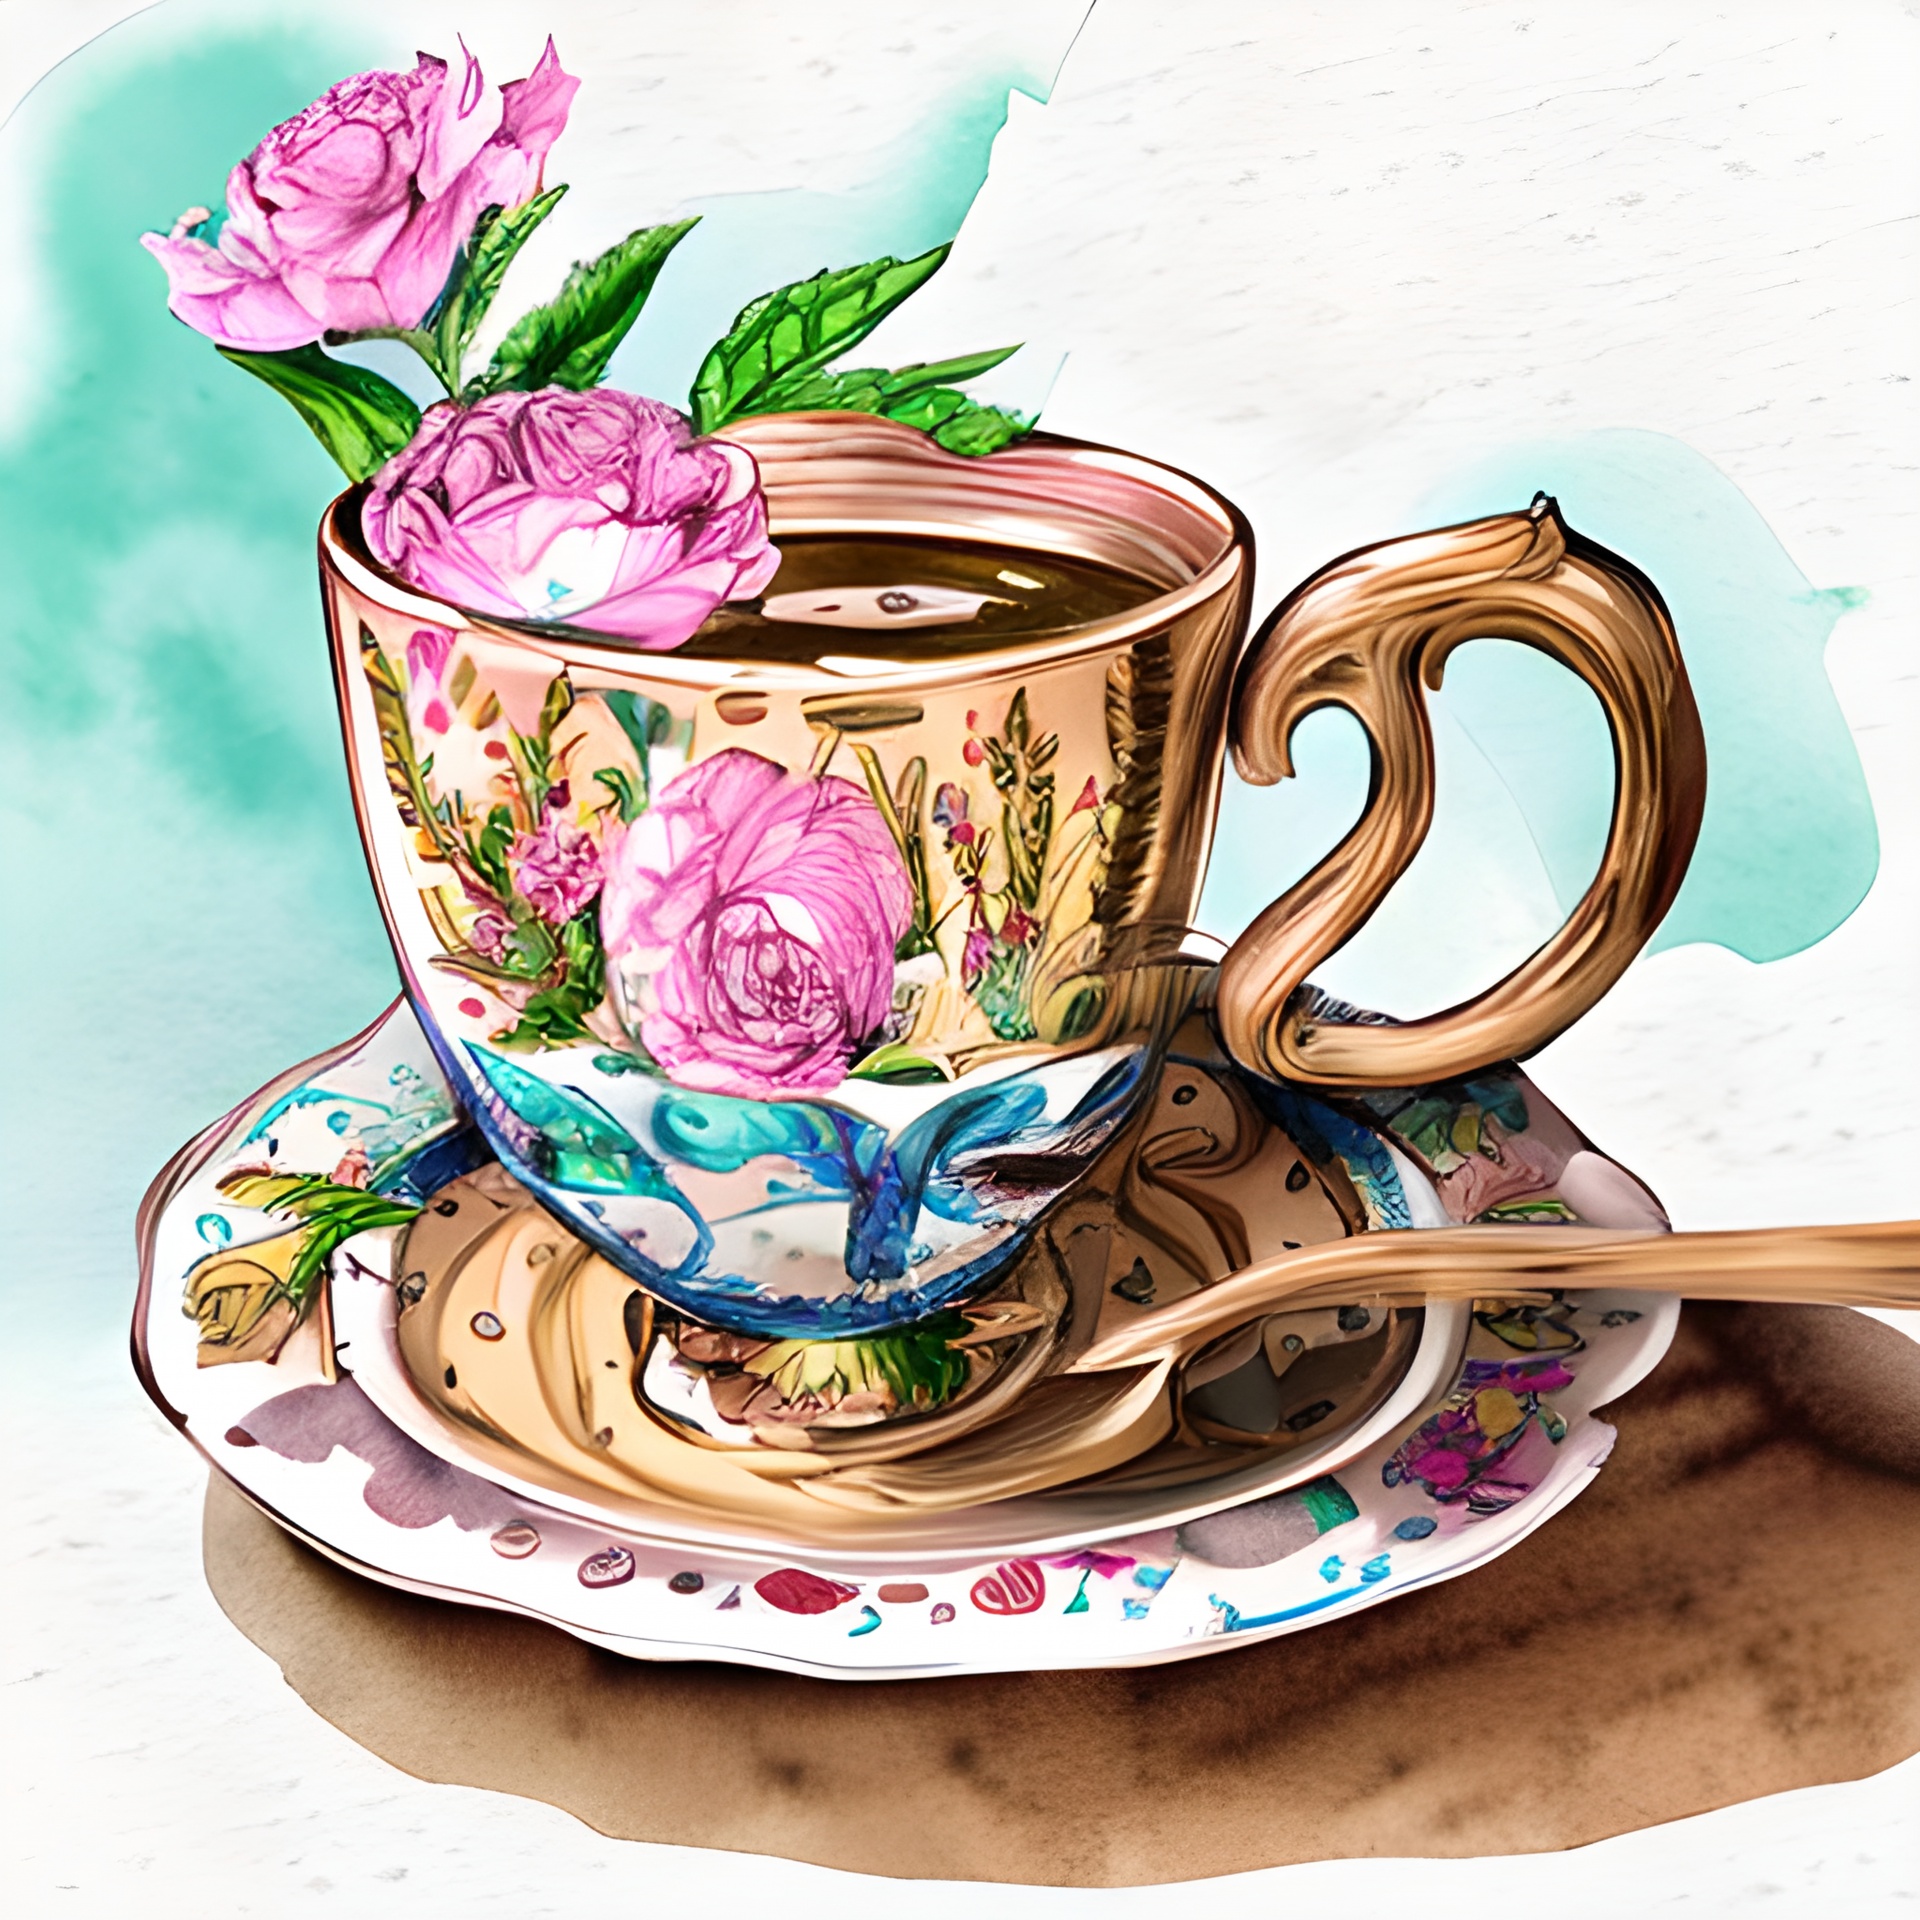 Vintage Floral Teacup Art Free Stock Photo - Public Domain Pictures